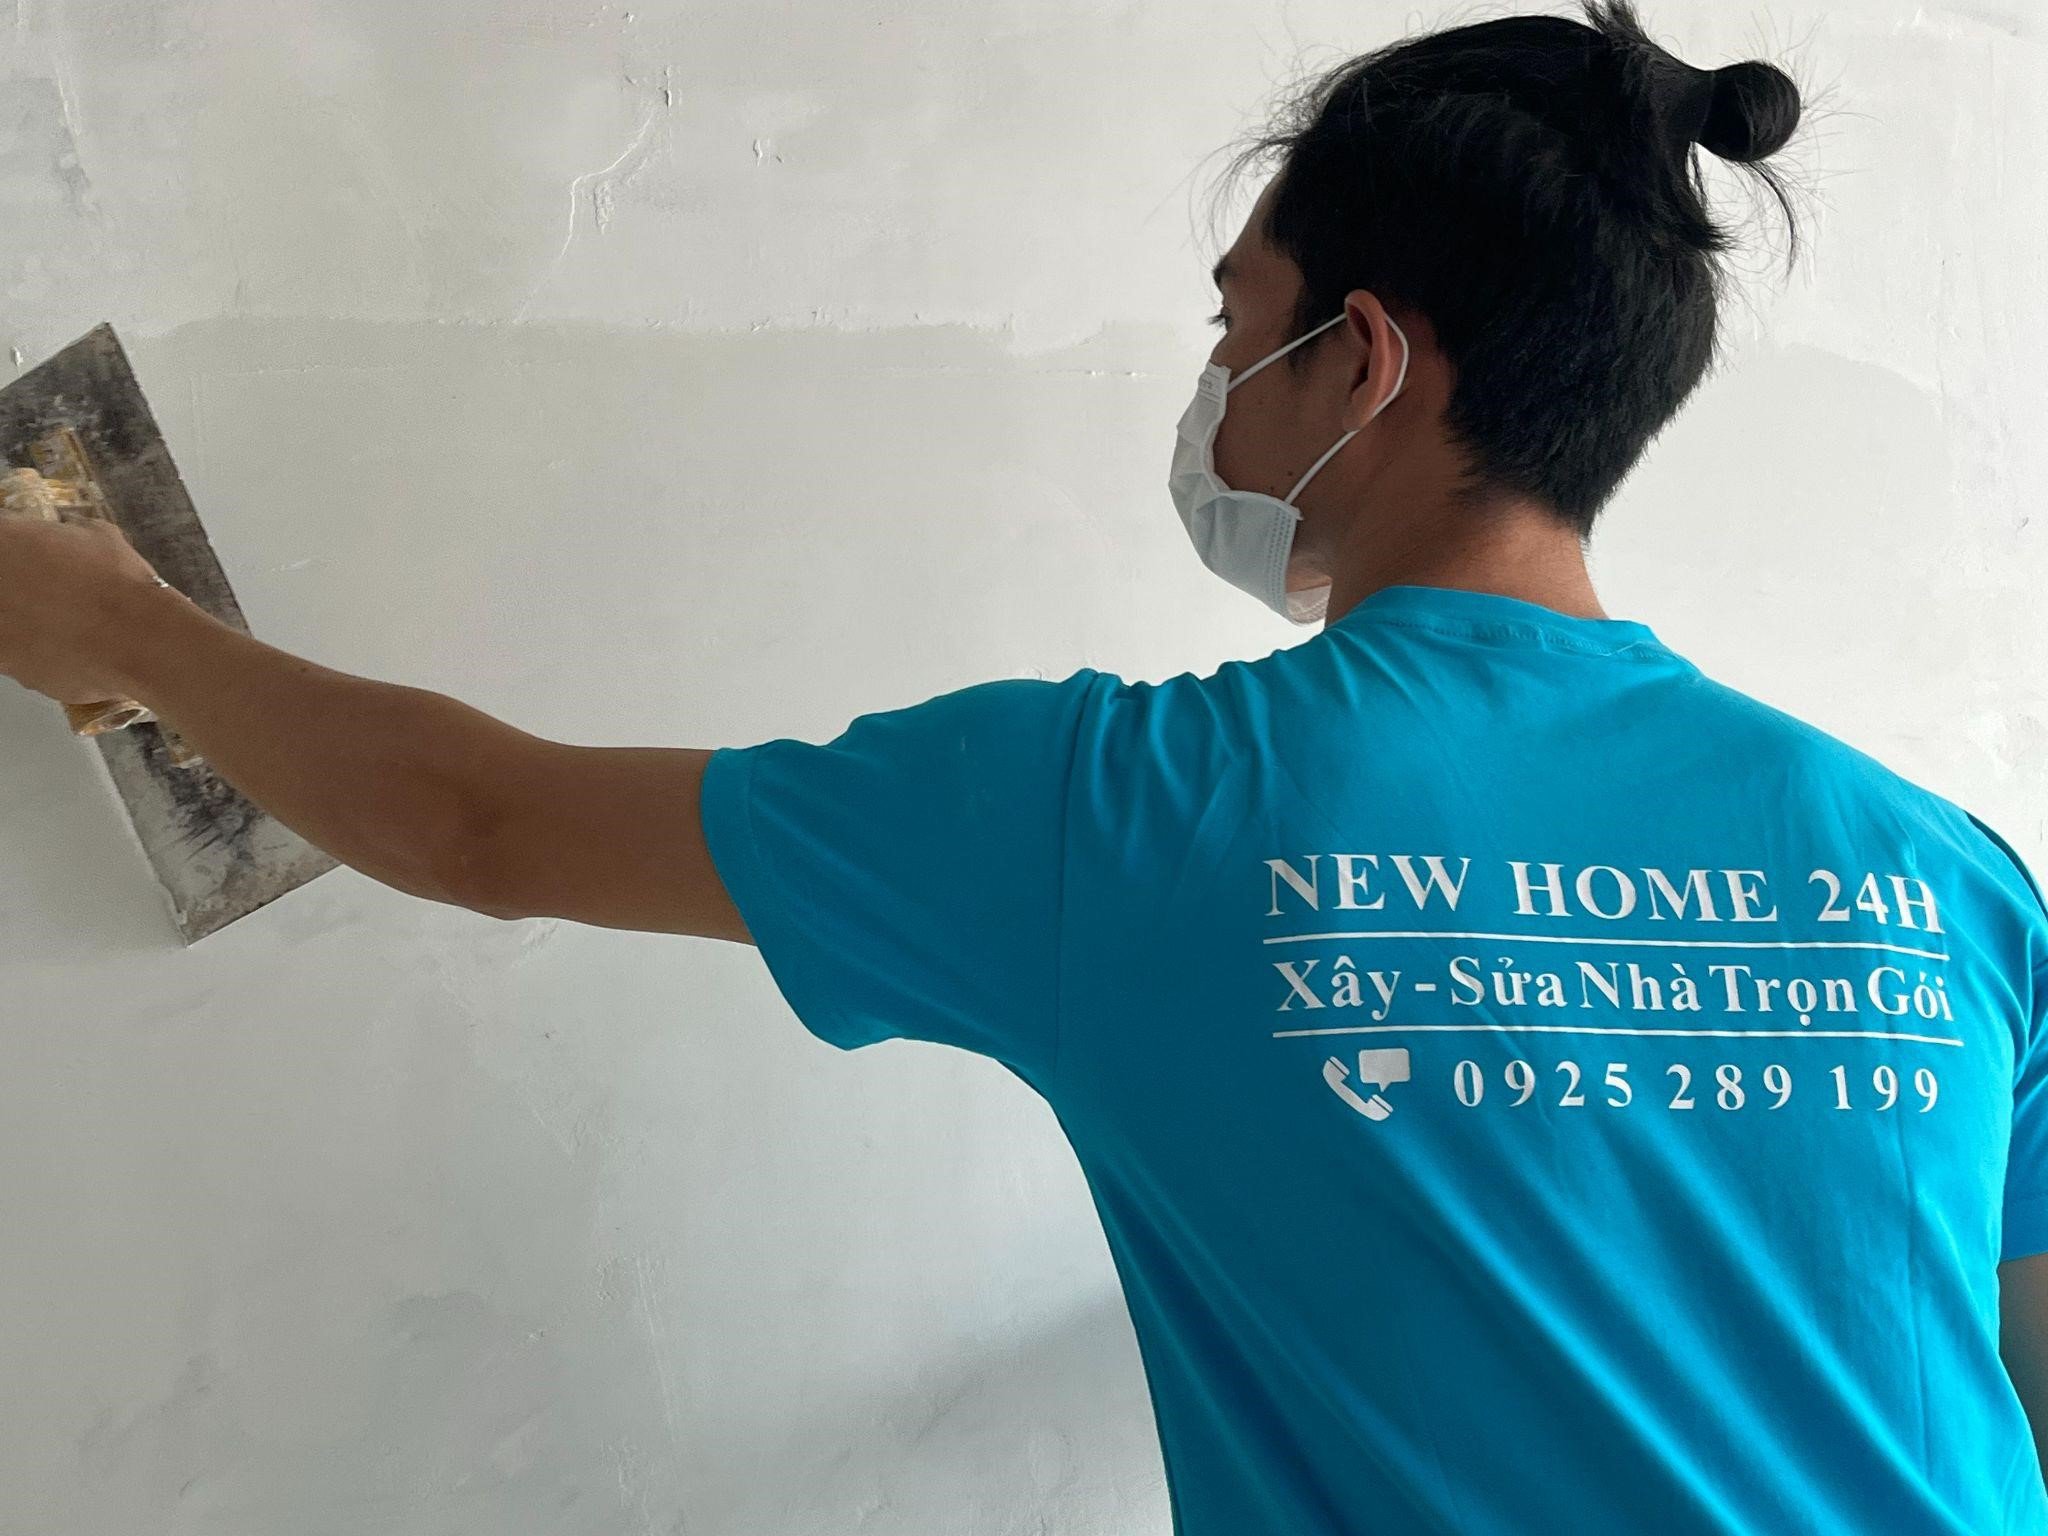 New Home 24H - Công ty sửa chữa nhà trọn gói uy tín tại TP.HCM - 4